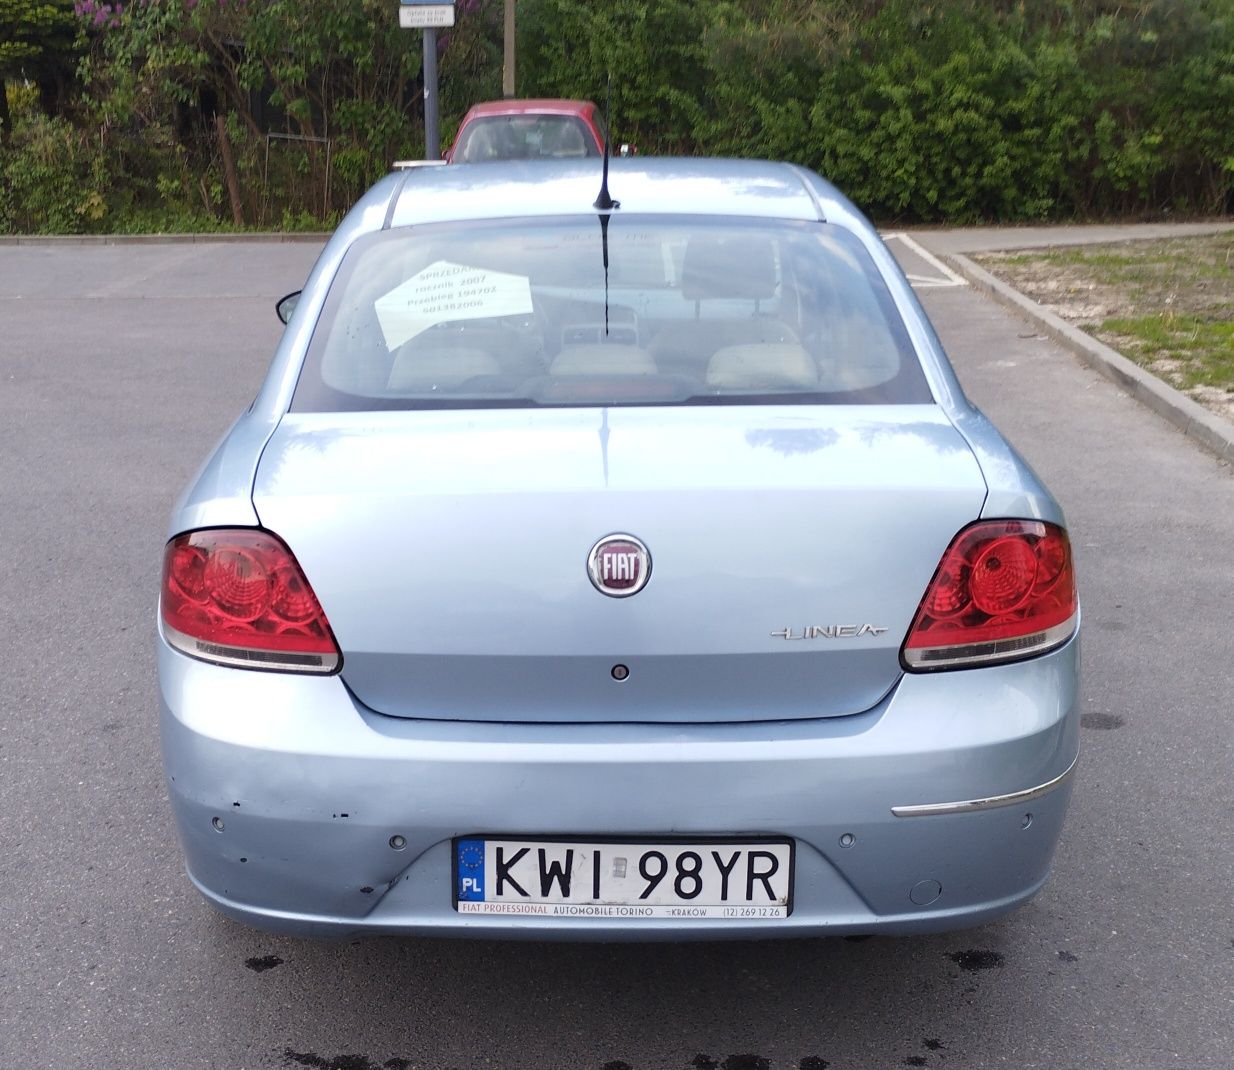 Fiat Linea 2007 rok